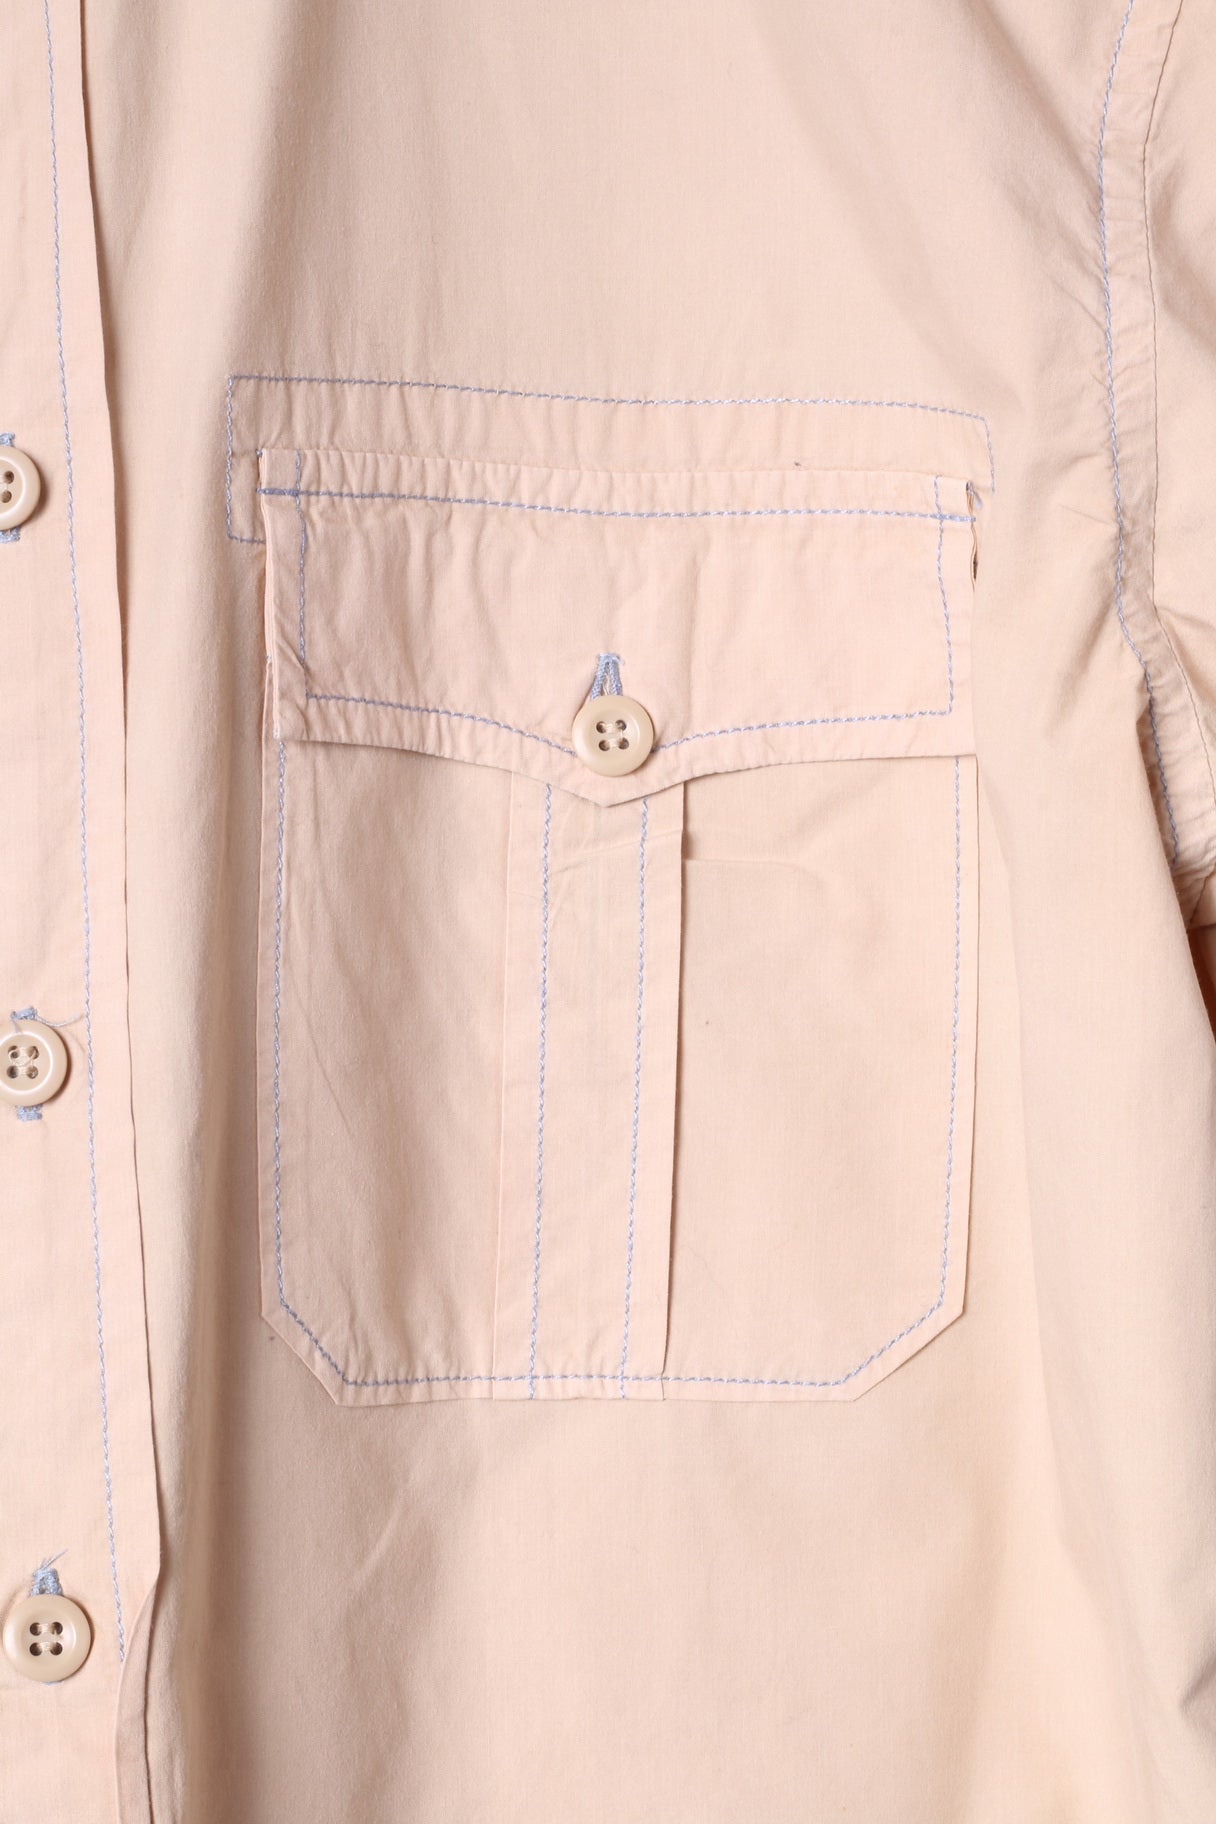 Replay Brand Blue Jeans Chemise décontractée XL pour homme en coton beige brodé à manches courtes